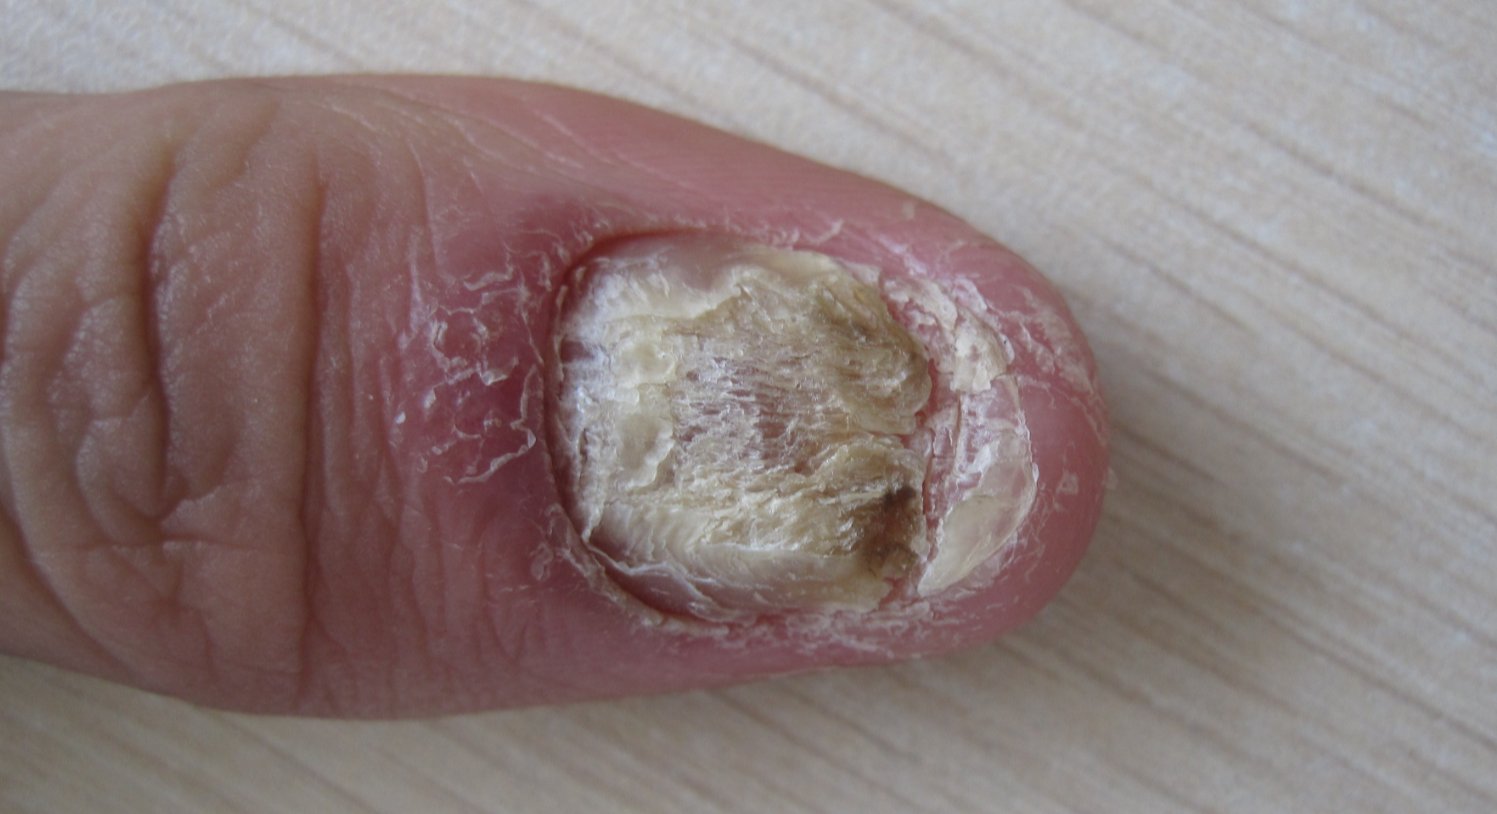 银屑病指甲图片 初期图片